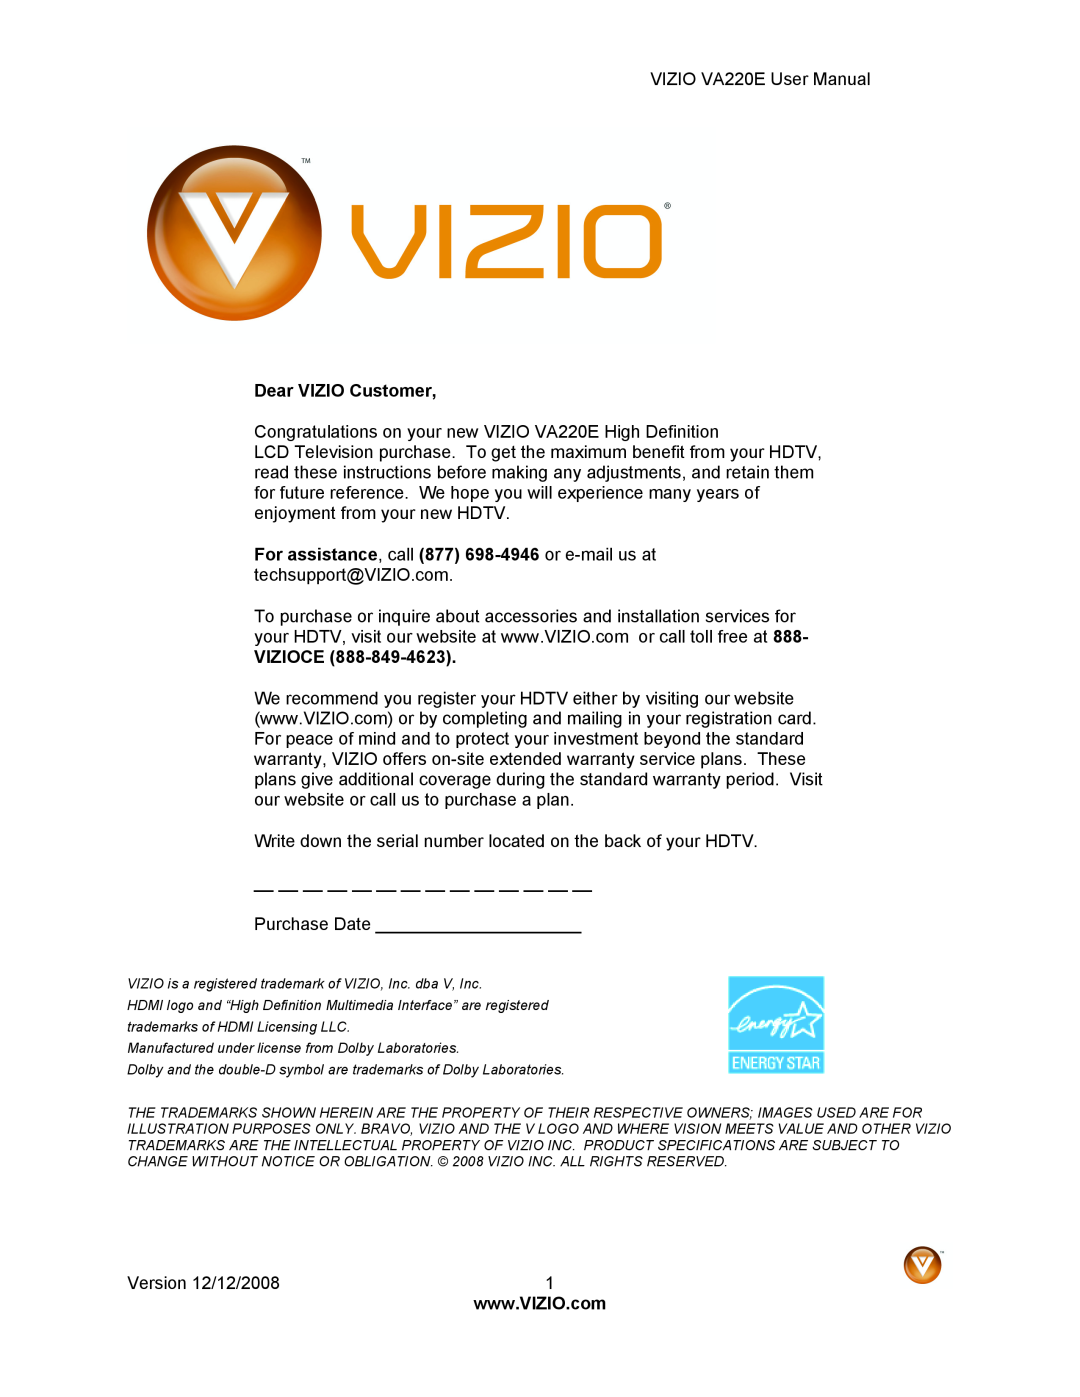 Vizio VA220E user manual Dear VIZIO Customer, Vizioce 